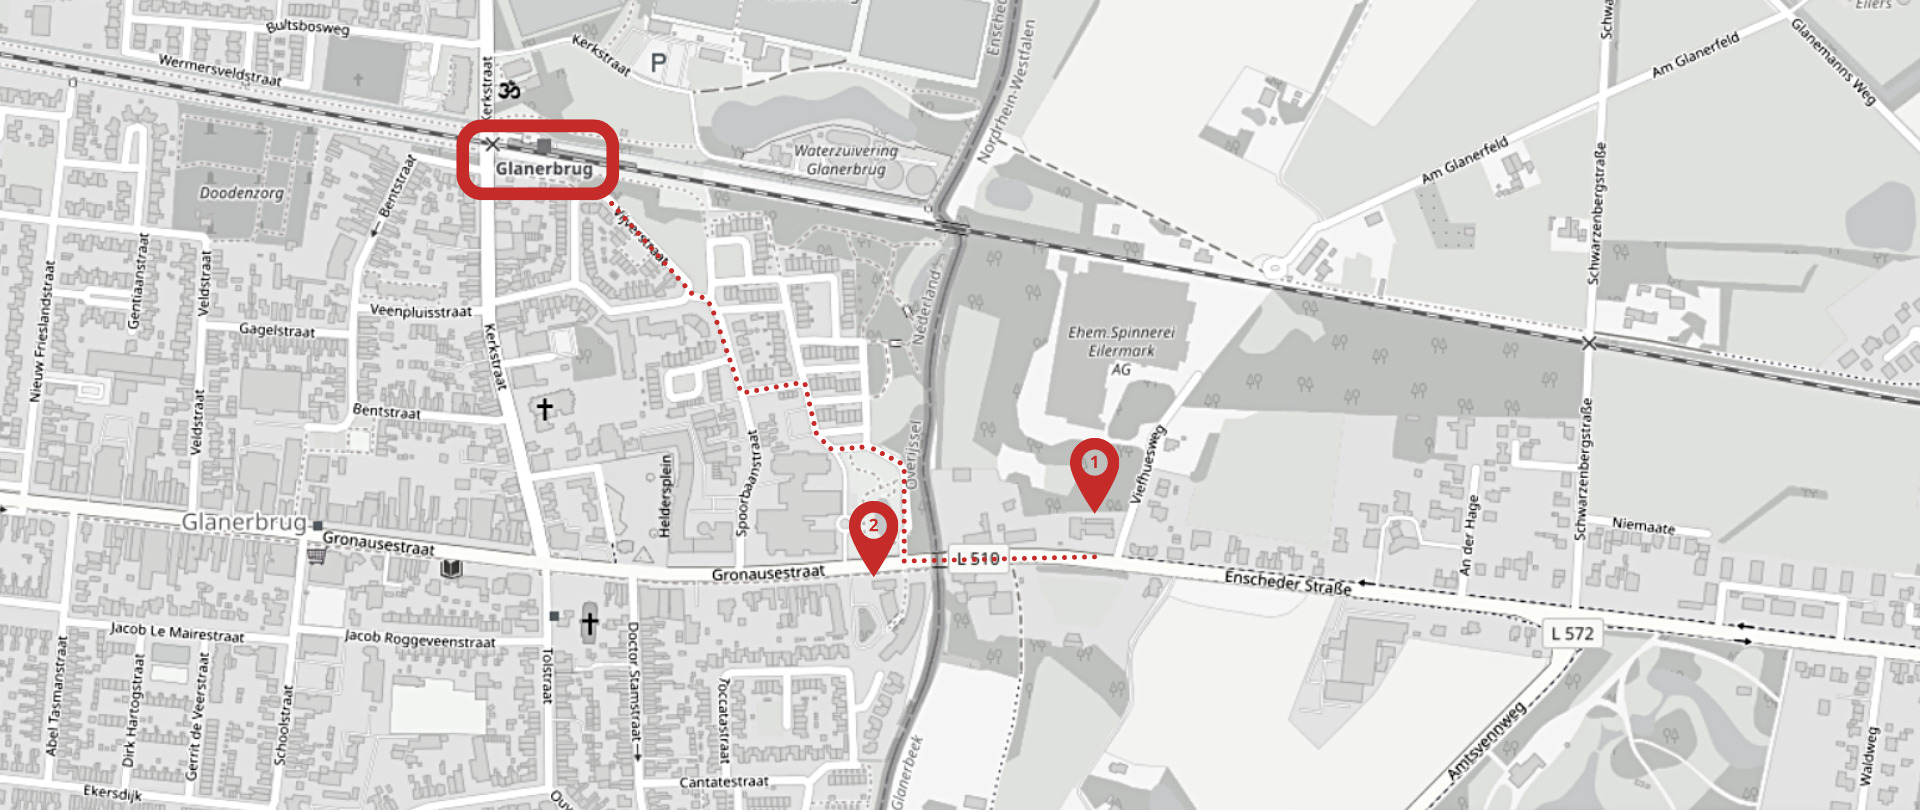 Standorte der EUREGIO: (1) Geschäftsstelle, (2) Tagungszentrum Terhaar sive Droste, (rot umrandet) Haltestelle Glanerbrug, (gepunktete Linie) Fußweg